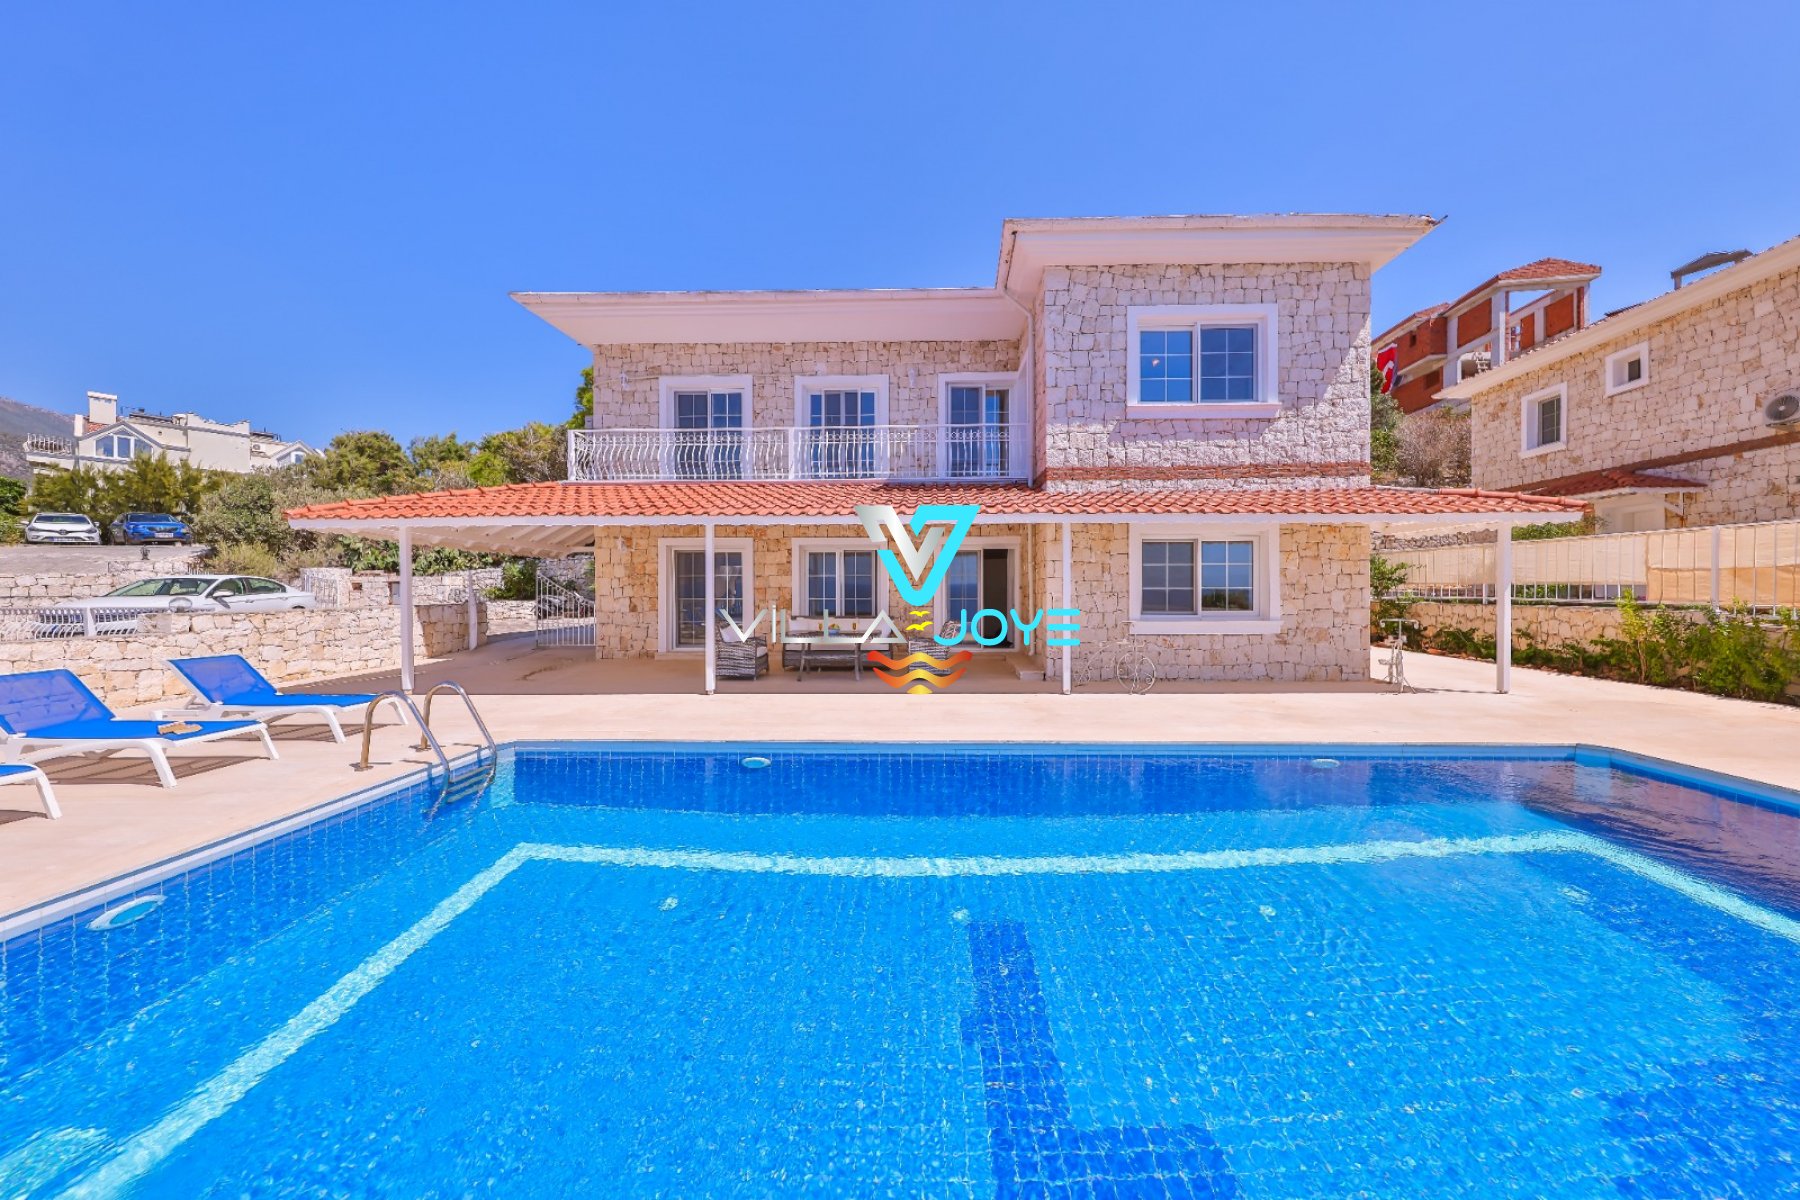 Rental Villa in Kaş, Antalya - No:46-1